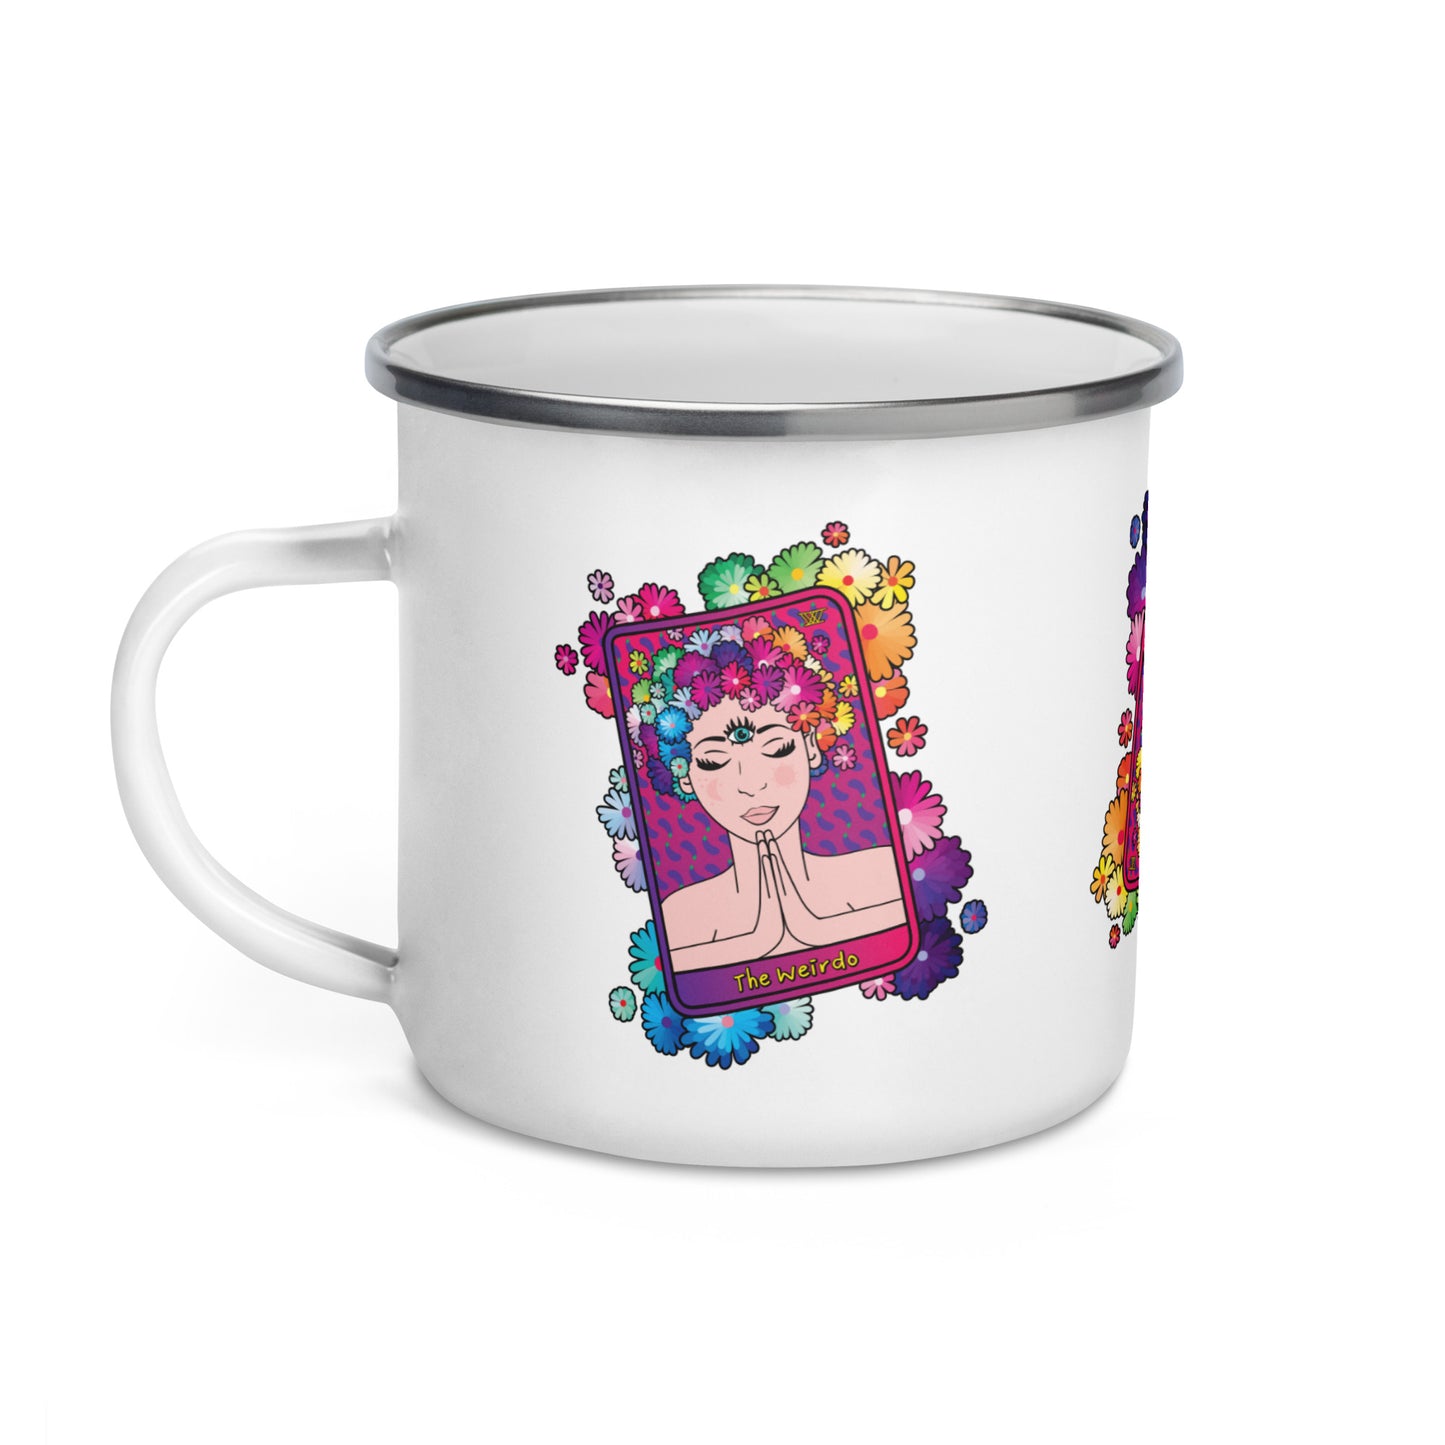 #WEIRDO | Specially designed for spiritual weirdos. This enamel mug has ‘The Weirdo’ tarot card displayed on the mug three times.